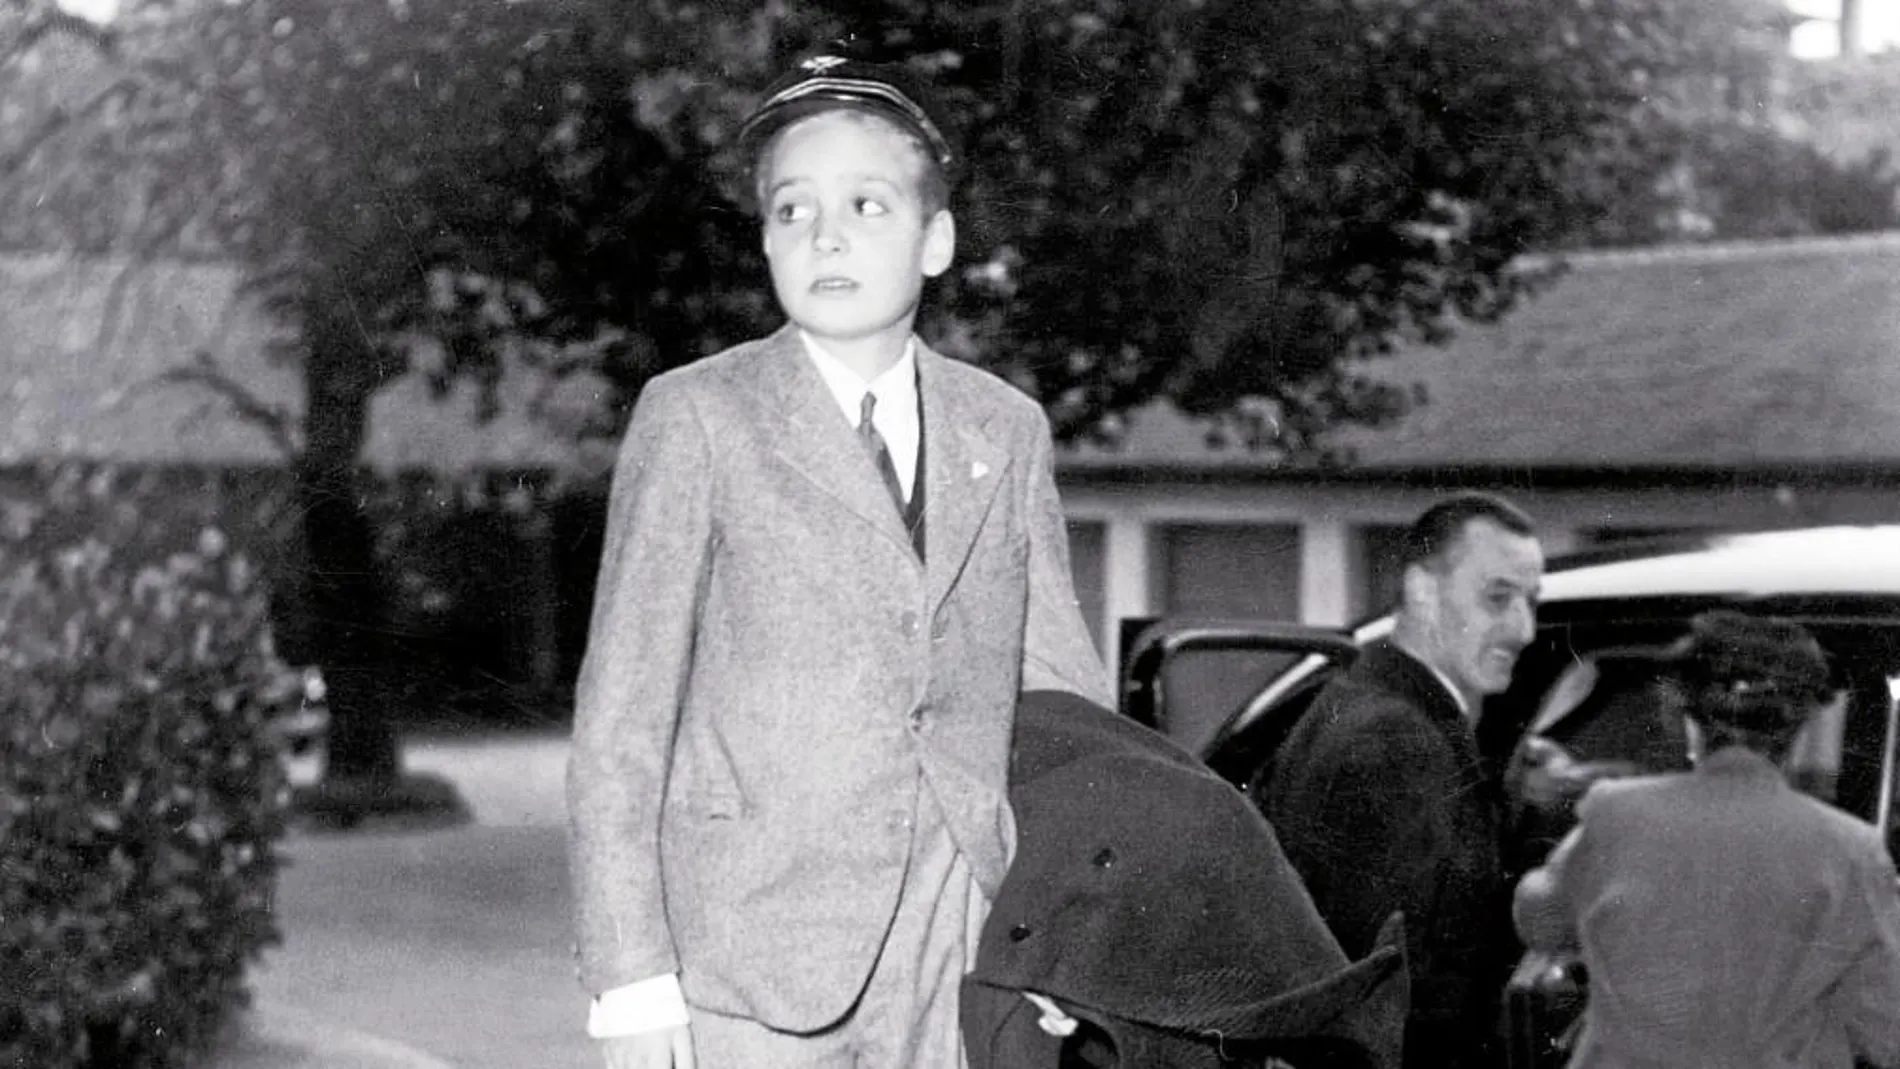 La primera vez que Don Juan Carlos pisó España tenía 10 años. Previamente había residido en Suiza, donde se tomó esta fotografía en 1958, en la que espera a montar en el coche que le llevaría al aeropuerto para coger un avión con destino a Portugal. De ahí se trasladó a España.